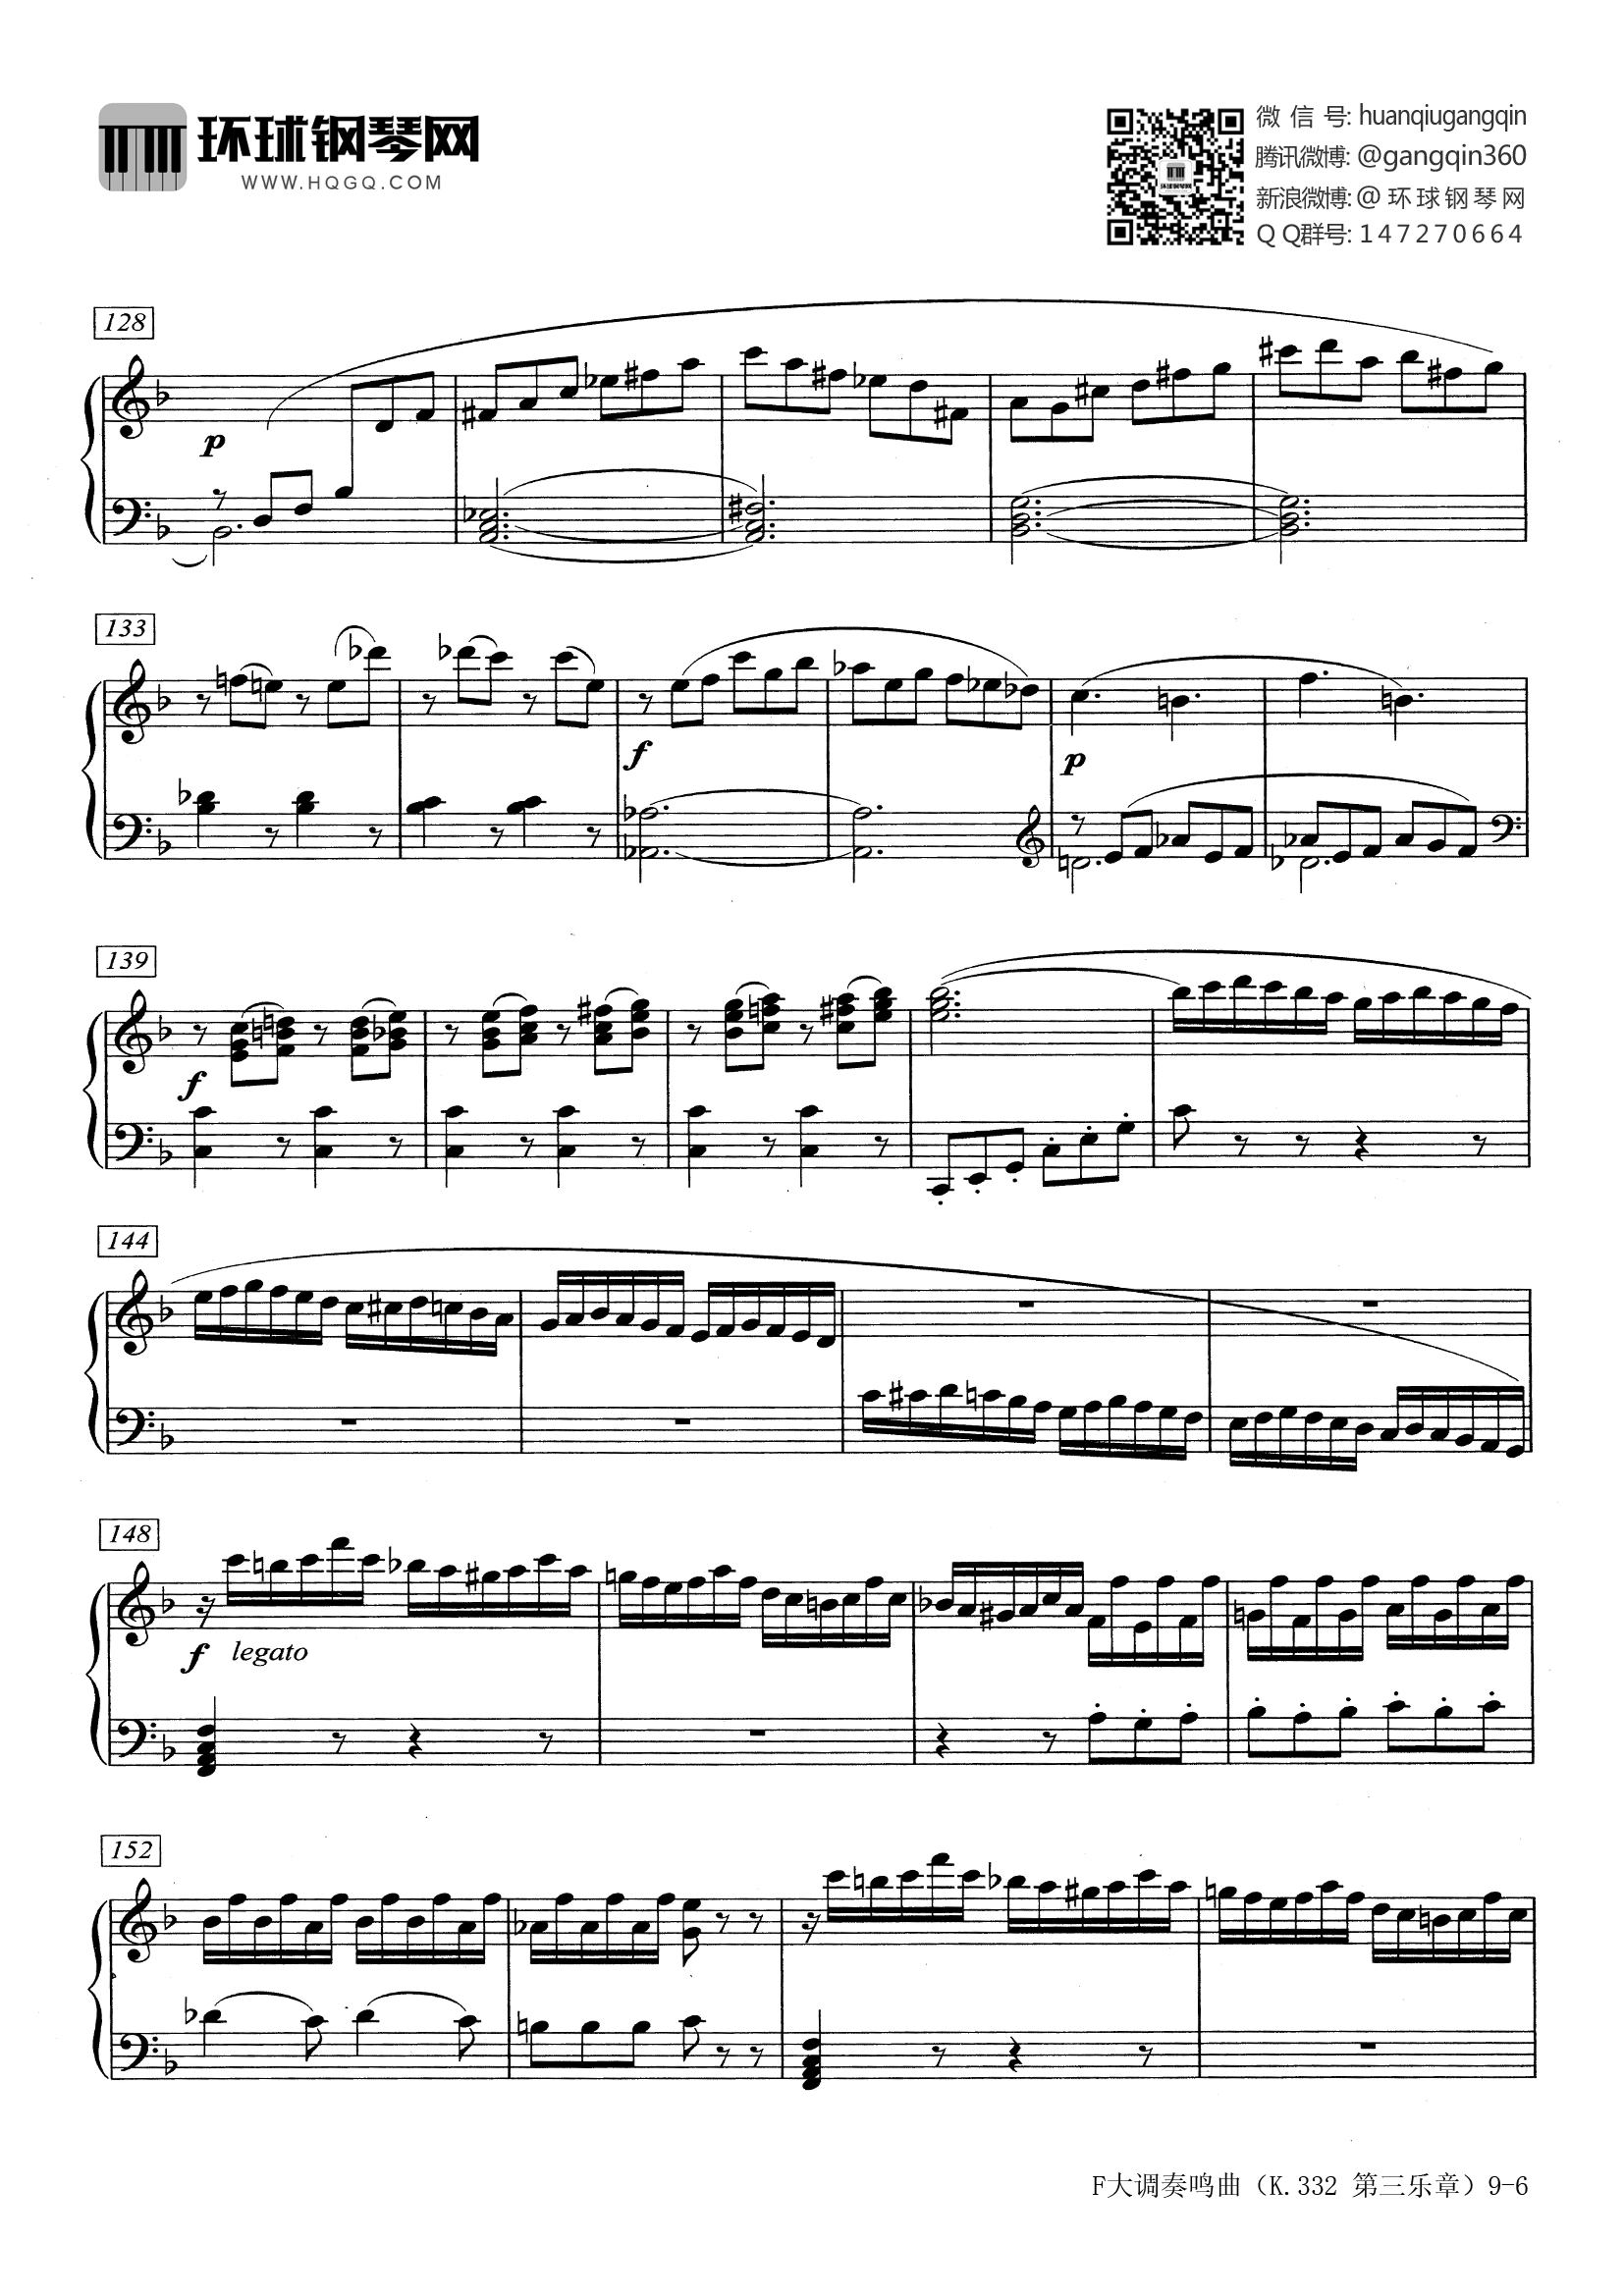 莫扎特k332钢琴谱原版图片